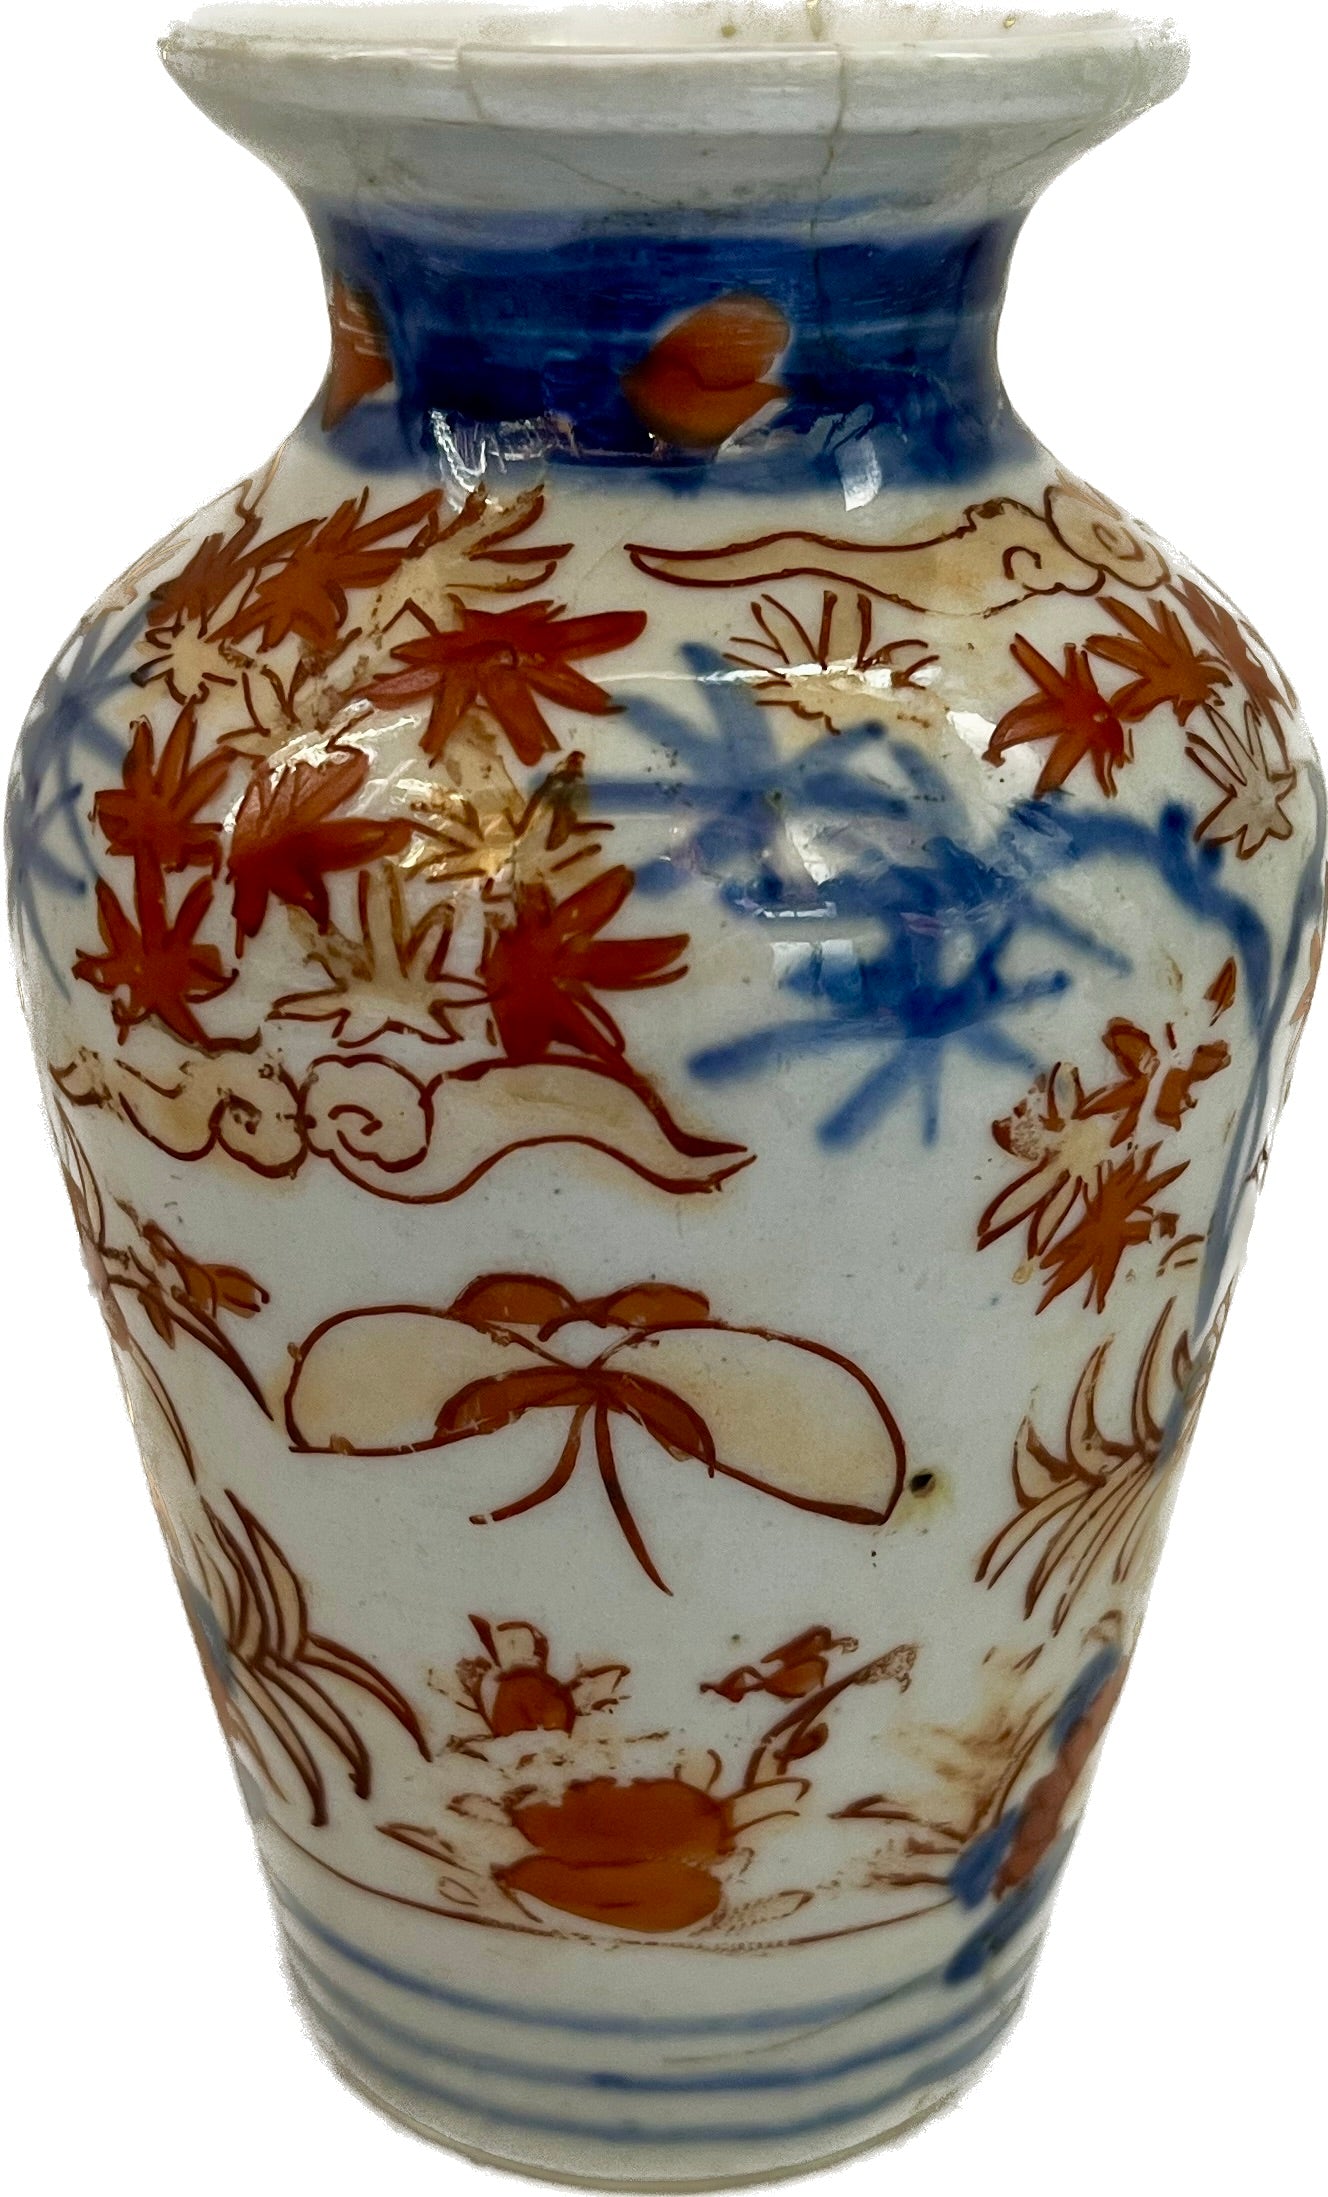 一对约十九世纪明治时期的伊万里小花瓶